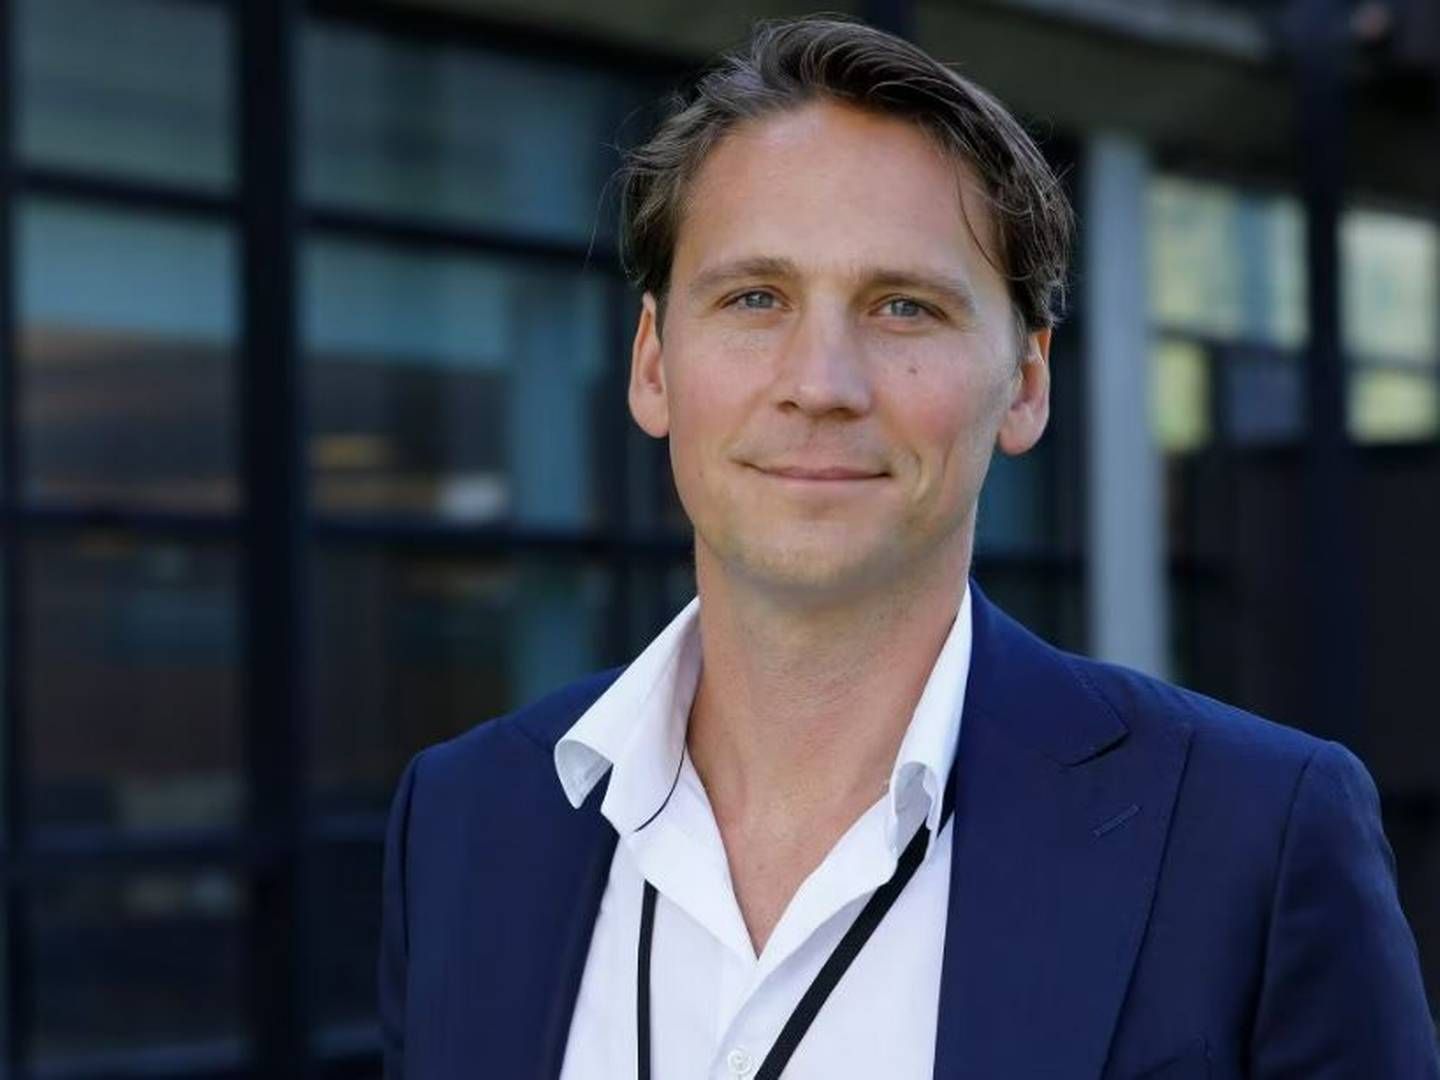 FORNØYD: Helge Haugane, direktør for gass og kraft i Equinor | Photo: Arne Reidar Mortensen / Equinor